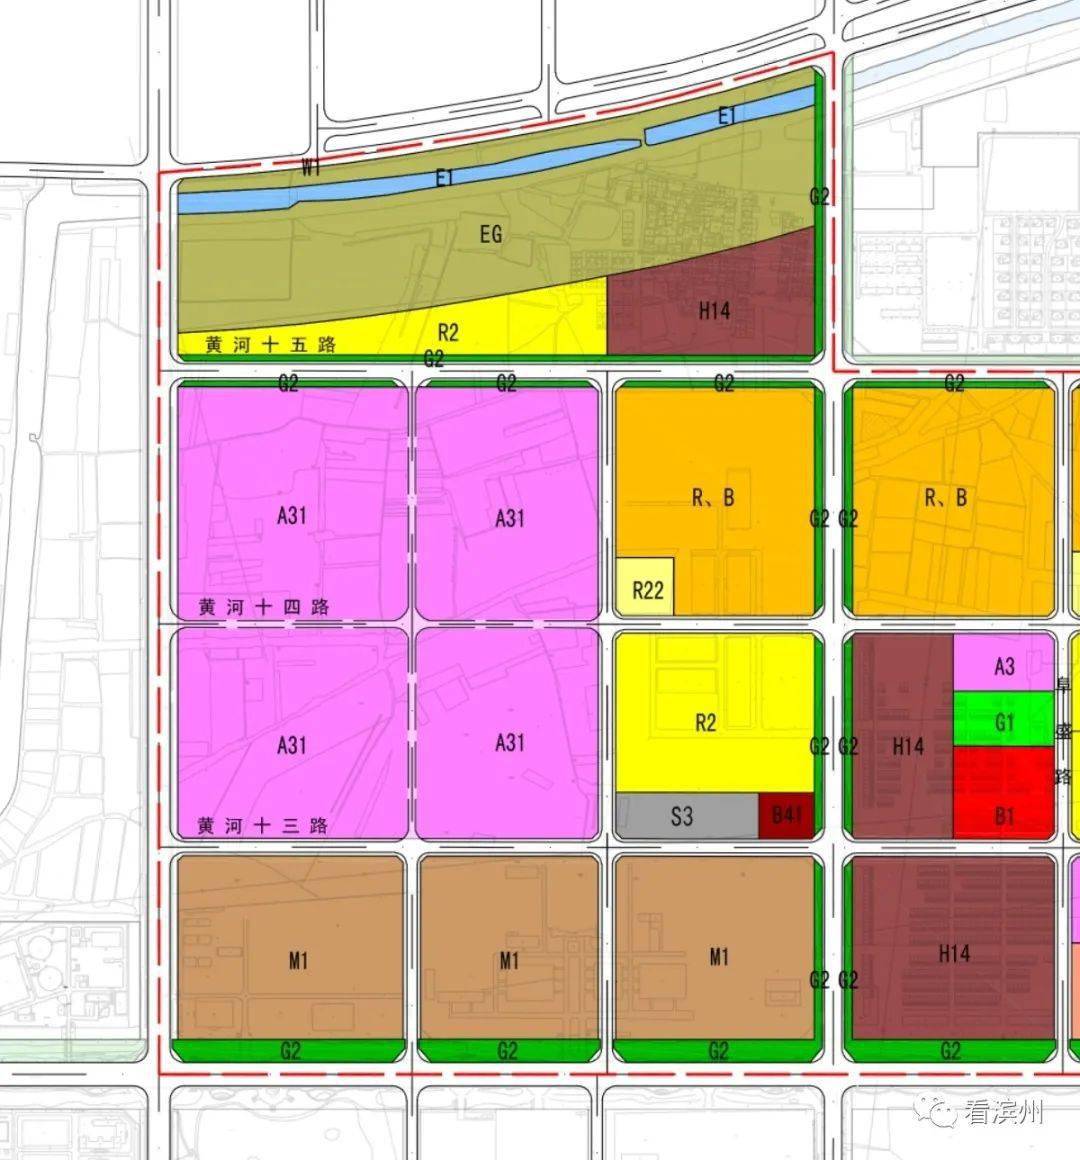 规划范围:规划街区位于滨州经济技术开发区南部片区,为产业集中区